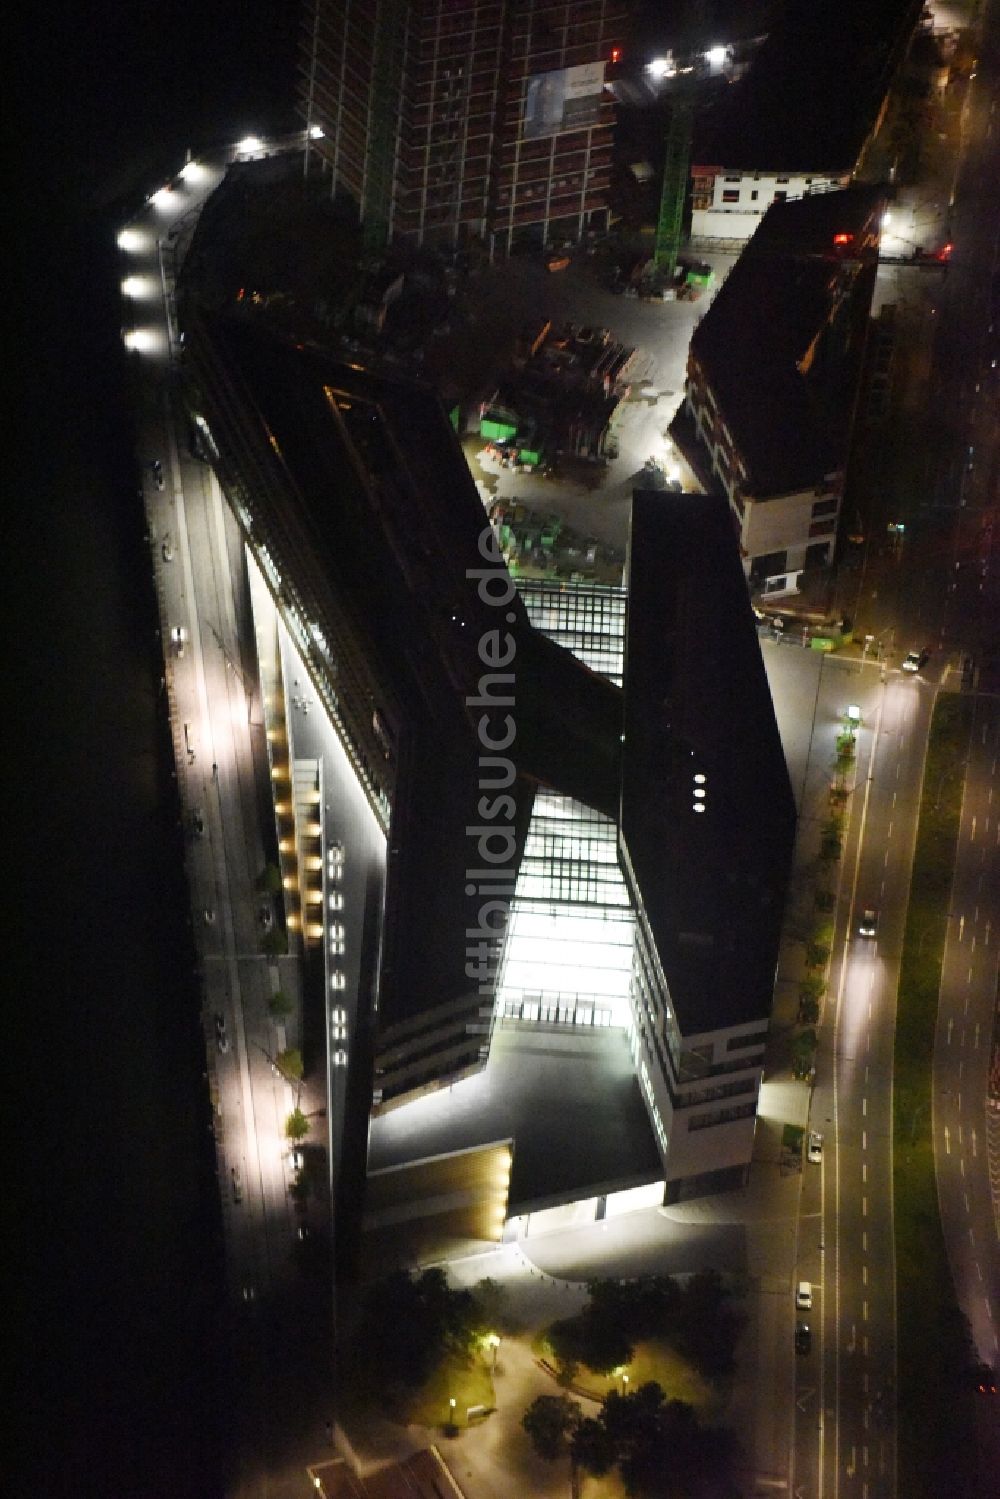 Nacht-Luftaufnahme Hamburg - Nachtluftbild Neubau des Gebäude der HafenCity Universität am Elbufer in Hamburg